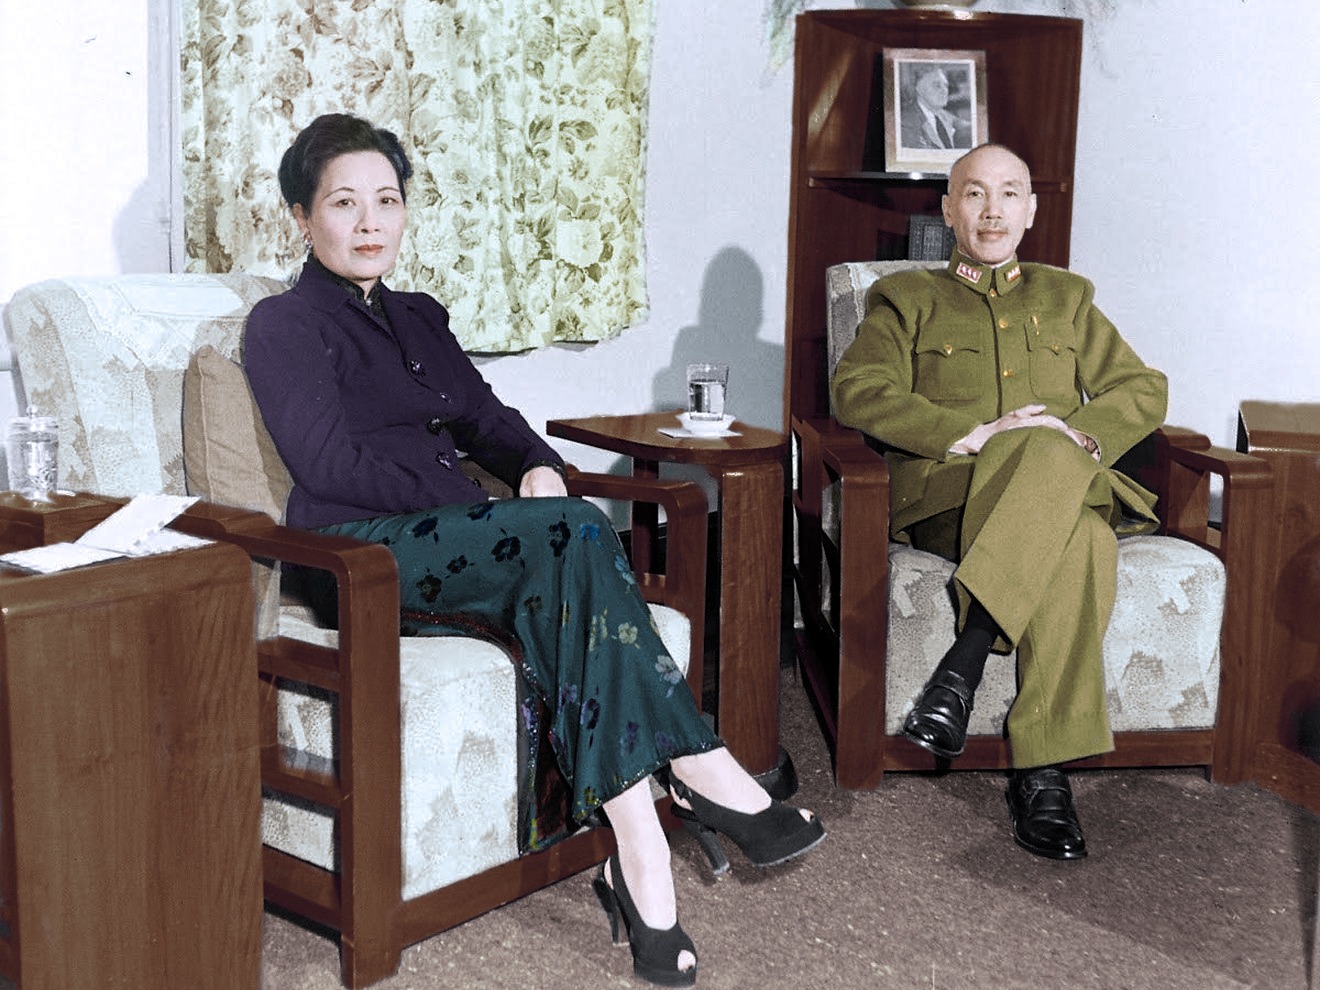 一组蒋介石的历史照片，带你认识一下，从青年到死亡的蒋介石 - 知乎